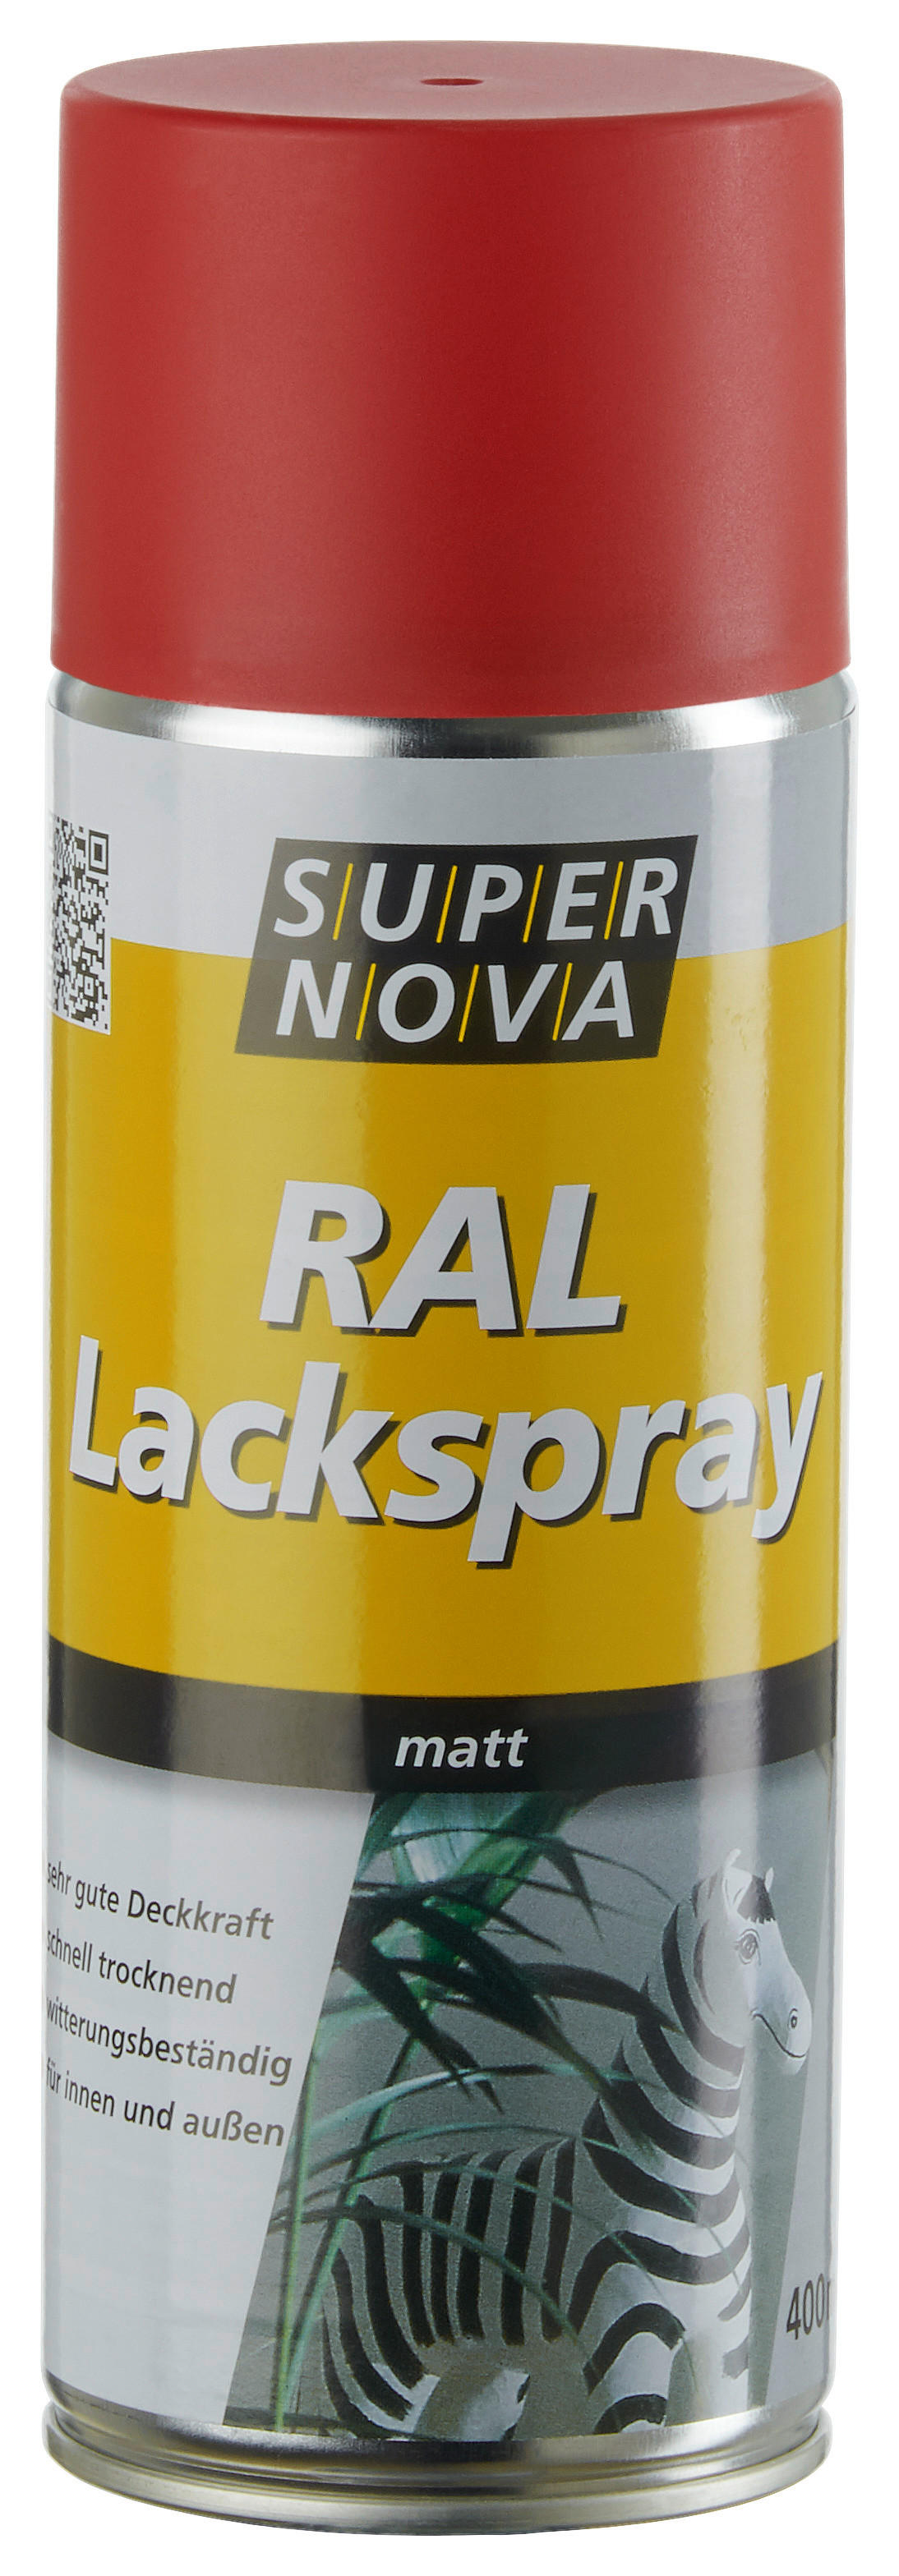 Super-Nova Lackspray feuerrot matt ca. 0,4 l Lackspray 400ml - feuerrot (400ml)